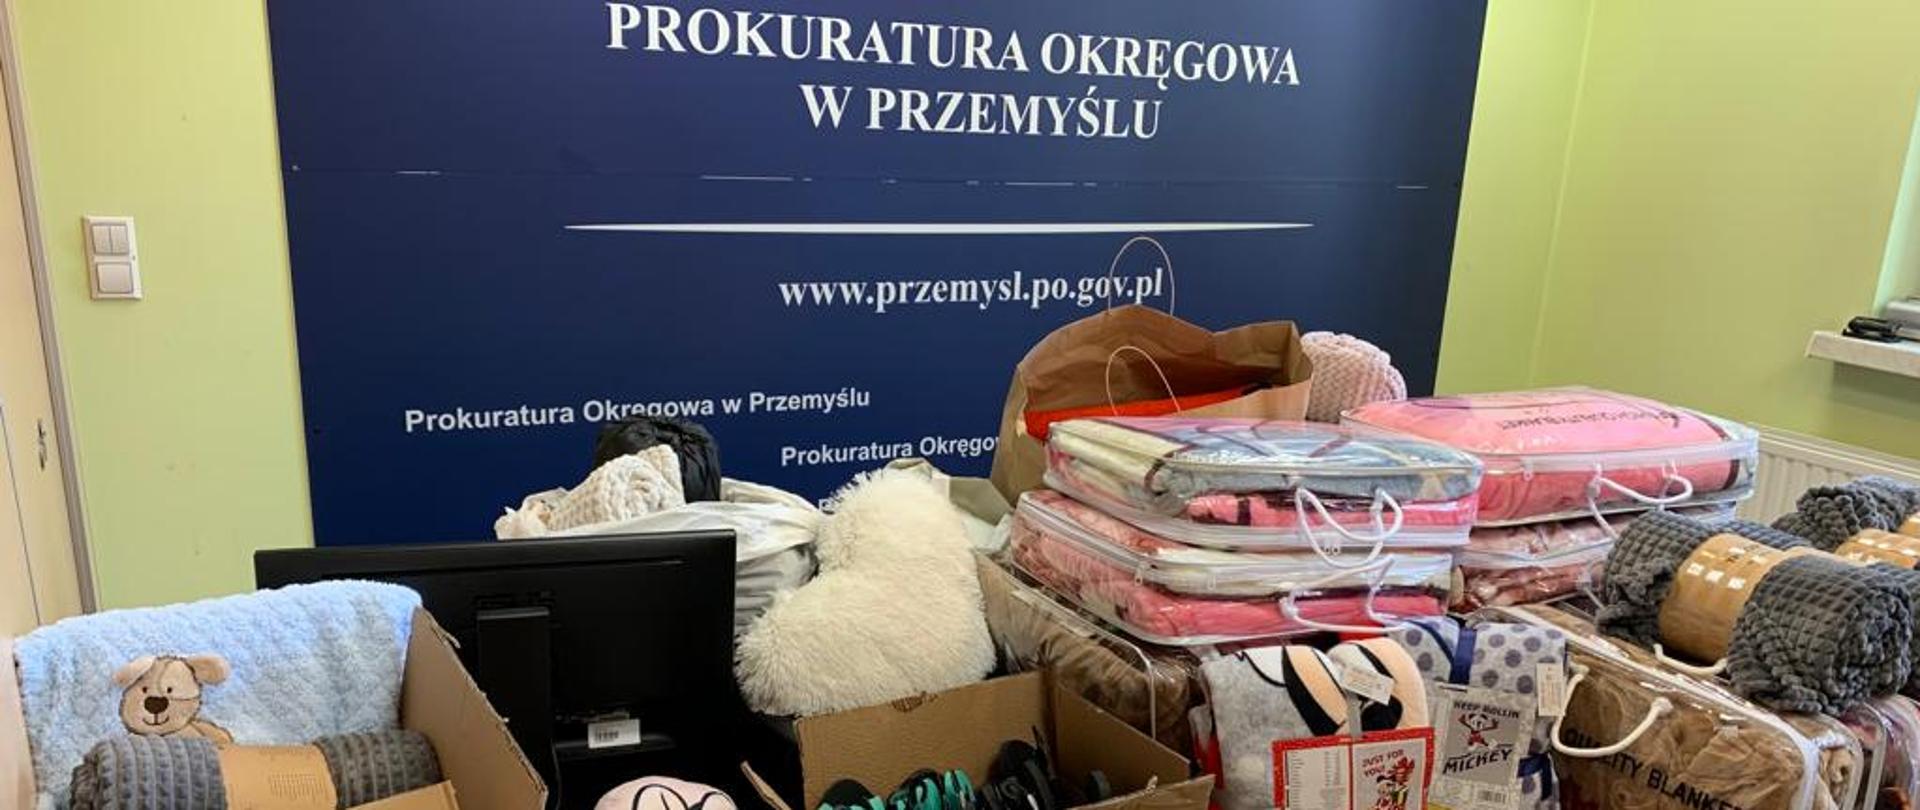 Zbiórka odzieży Prokuratury Okręgowej w Przemyślu oraz darów dla uchodźców z Ukrainy.